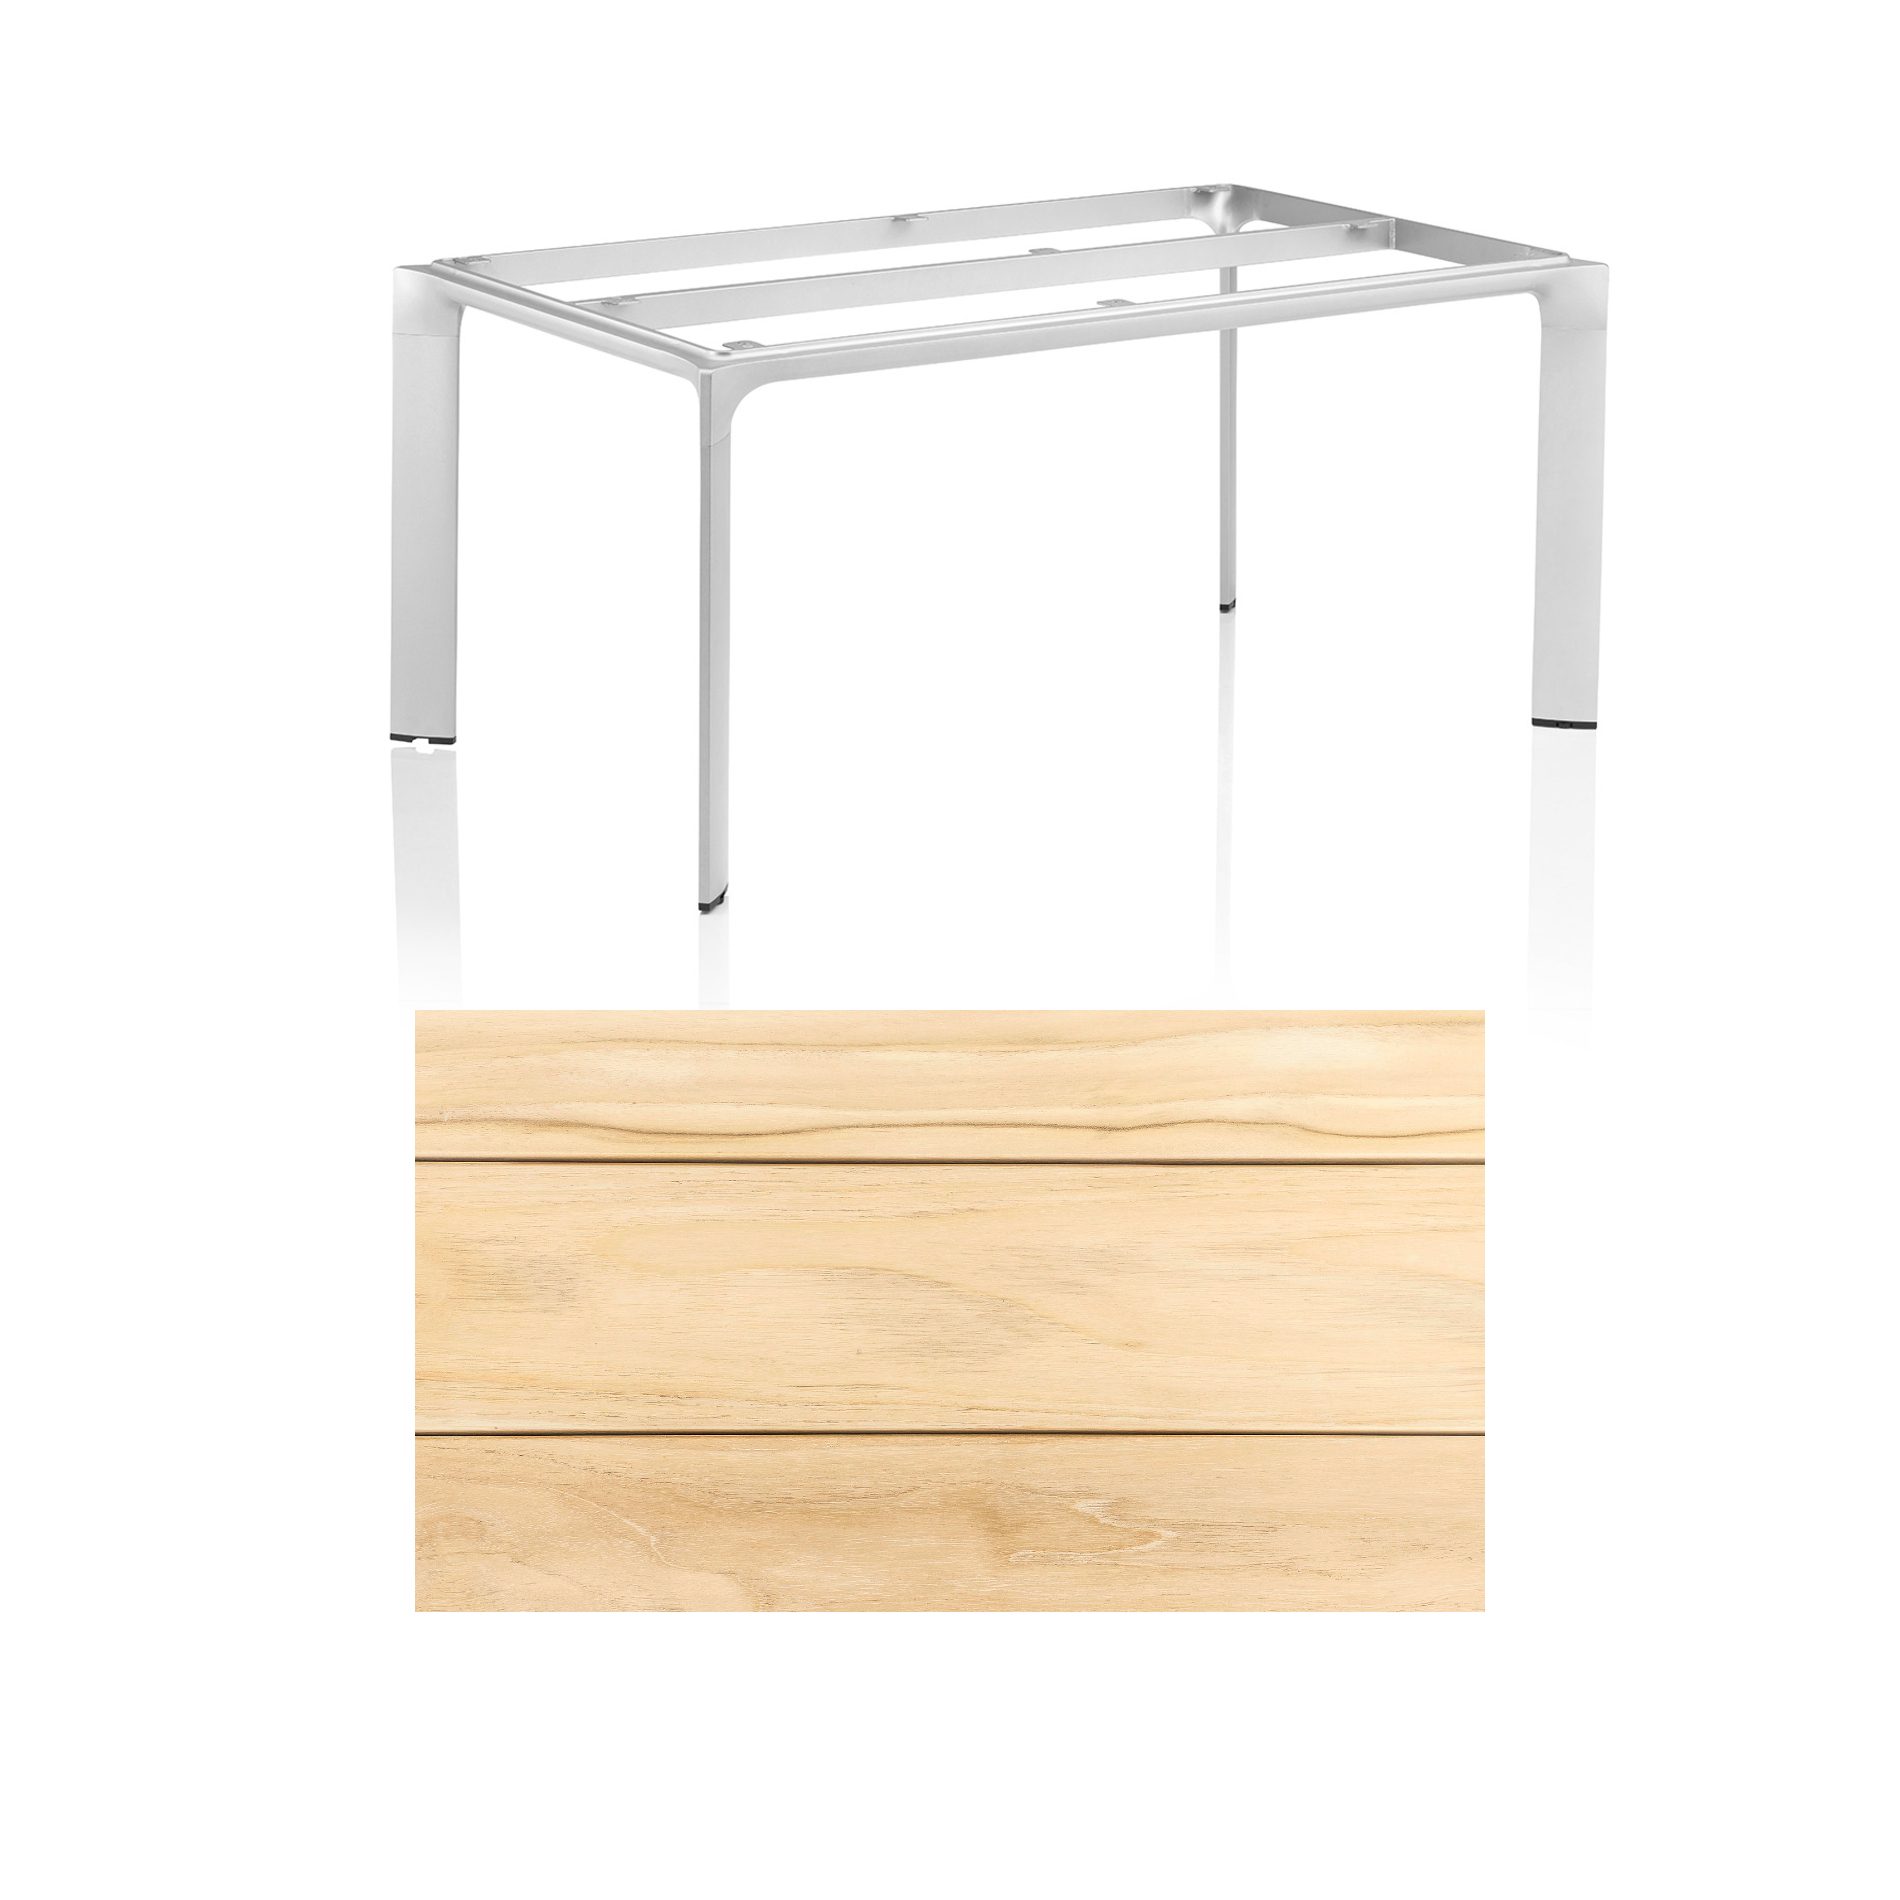 Kettler "Diamond" Tischsystem Gartentisch, Tischgestell Aluminium silber, Tischplatte Teakholz breite Leisten, 180x95 cm